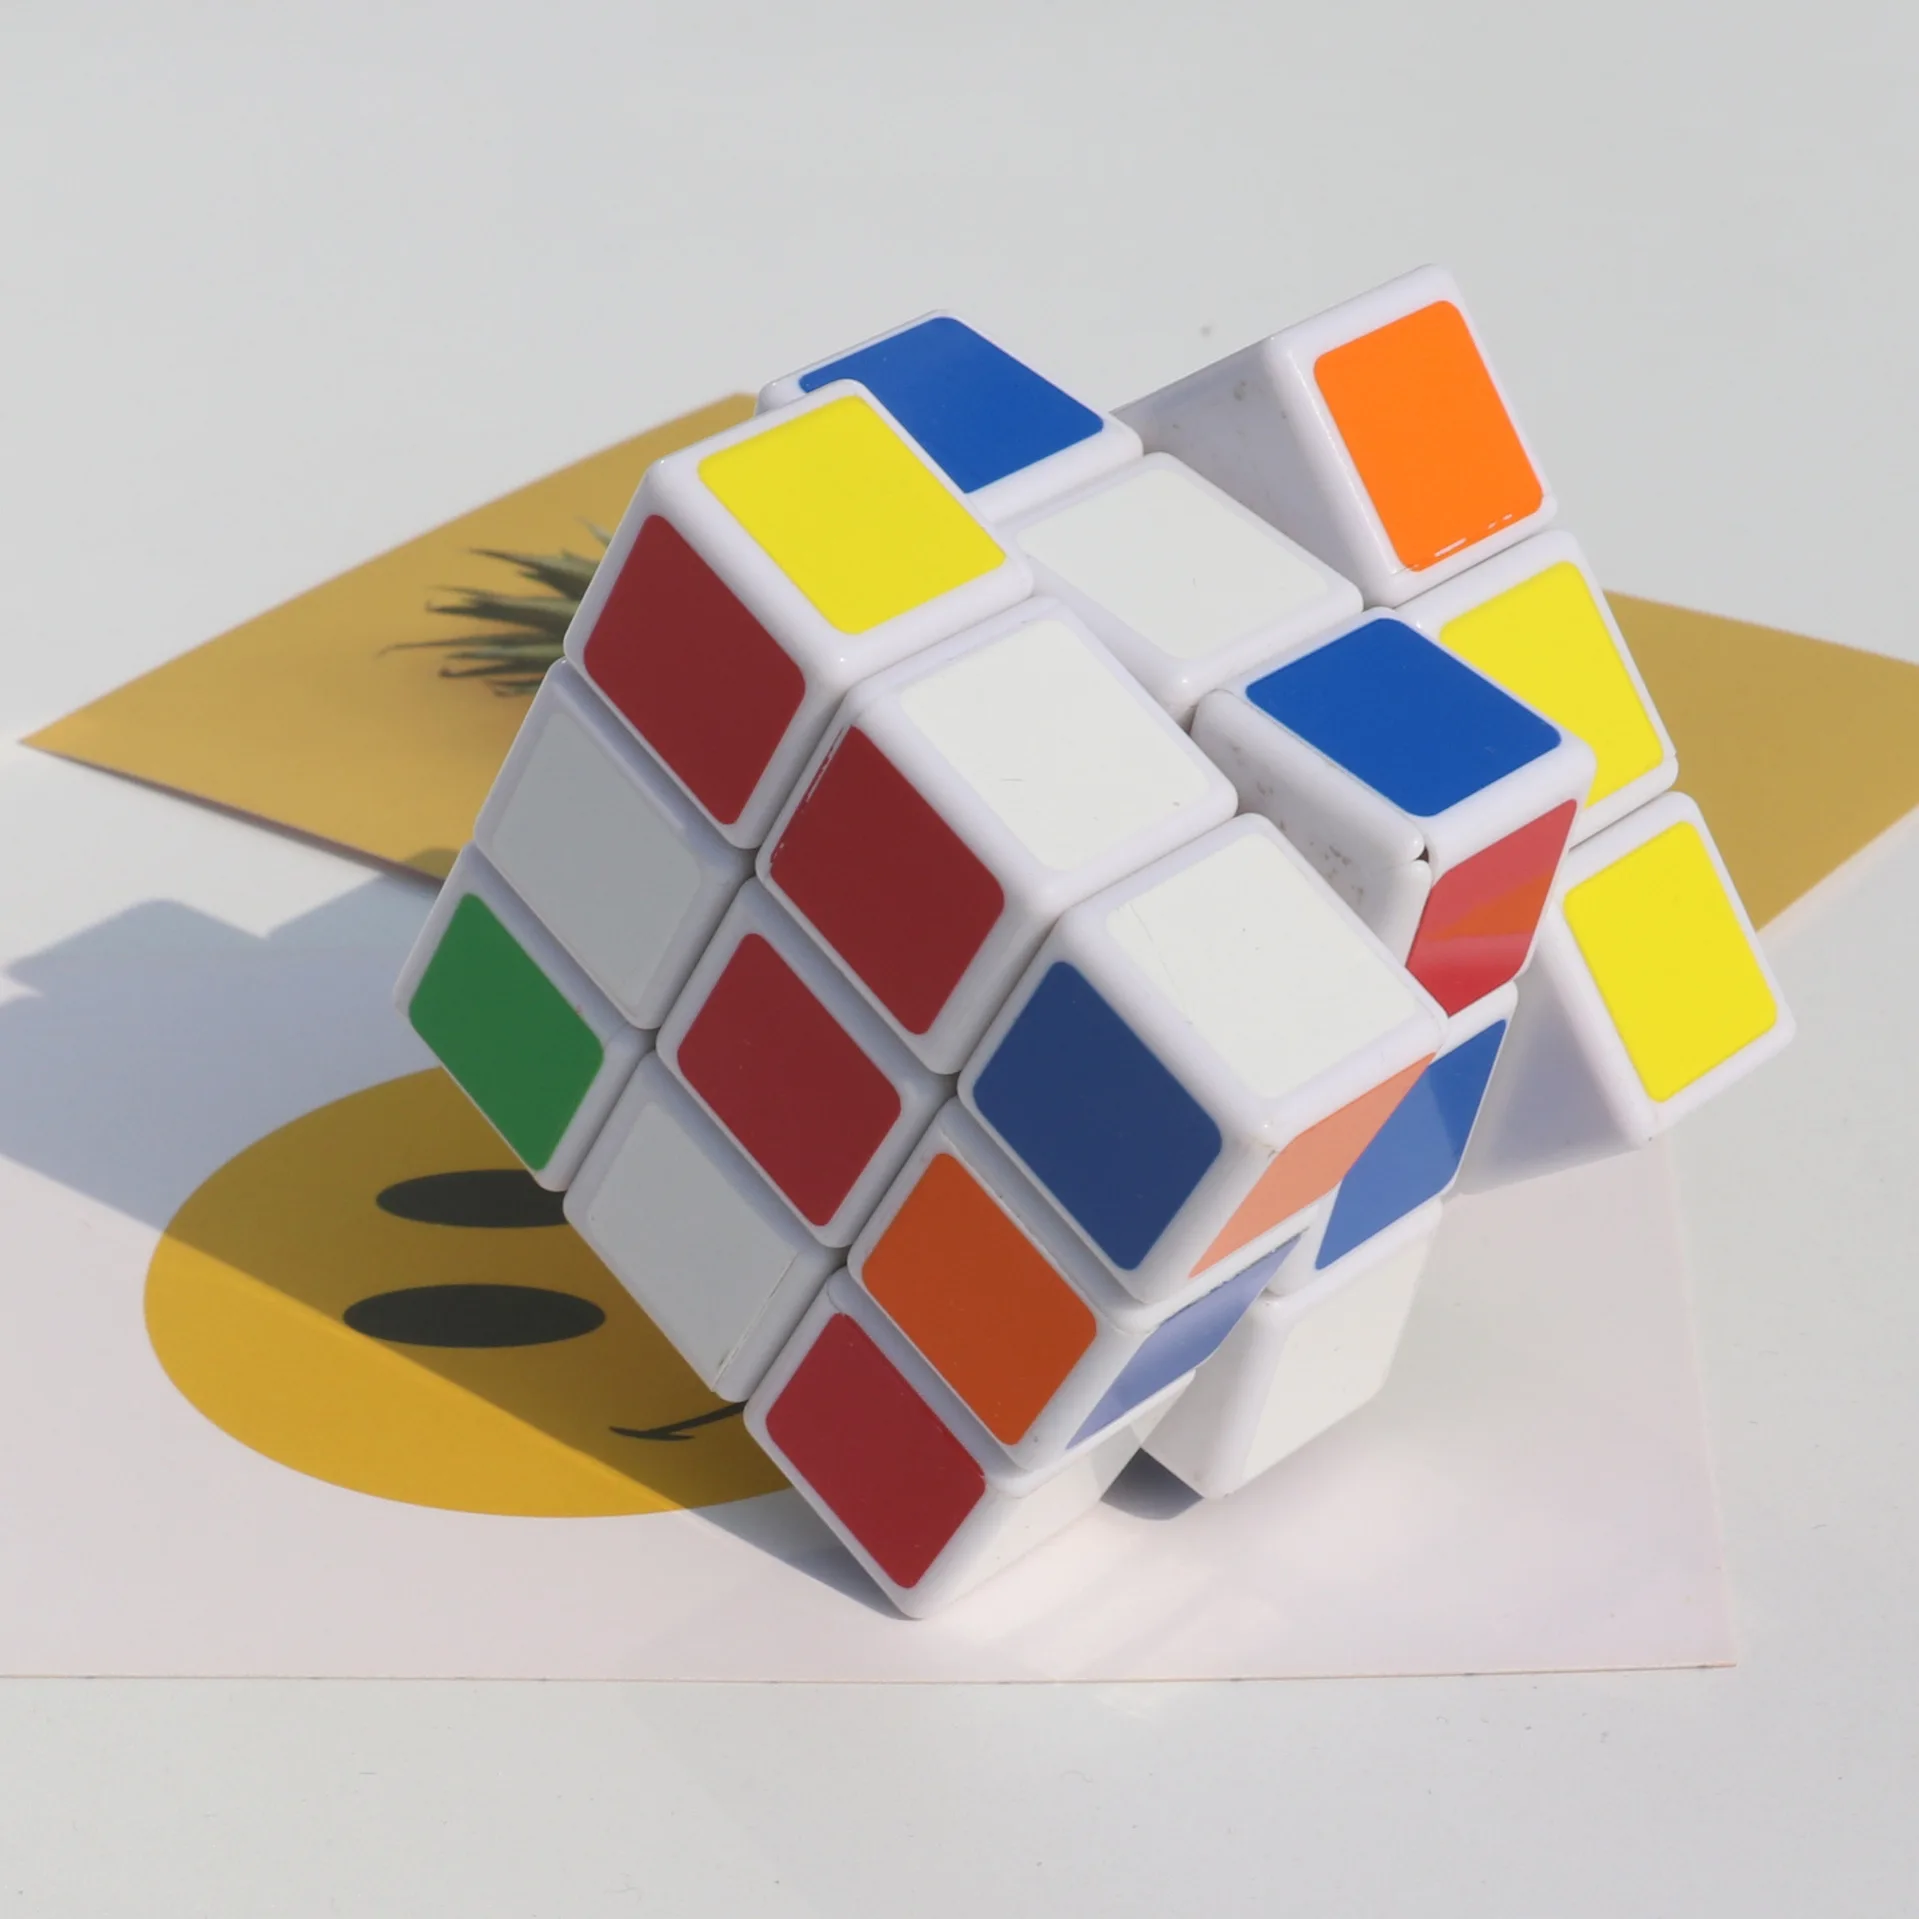 Кубик Рубика для профессионалов 5,7x5,7x5,7 см скоростной кубик-головоломка нео куб для снятия стресса куб для взрослых Развивающие игрушки для детей подарок